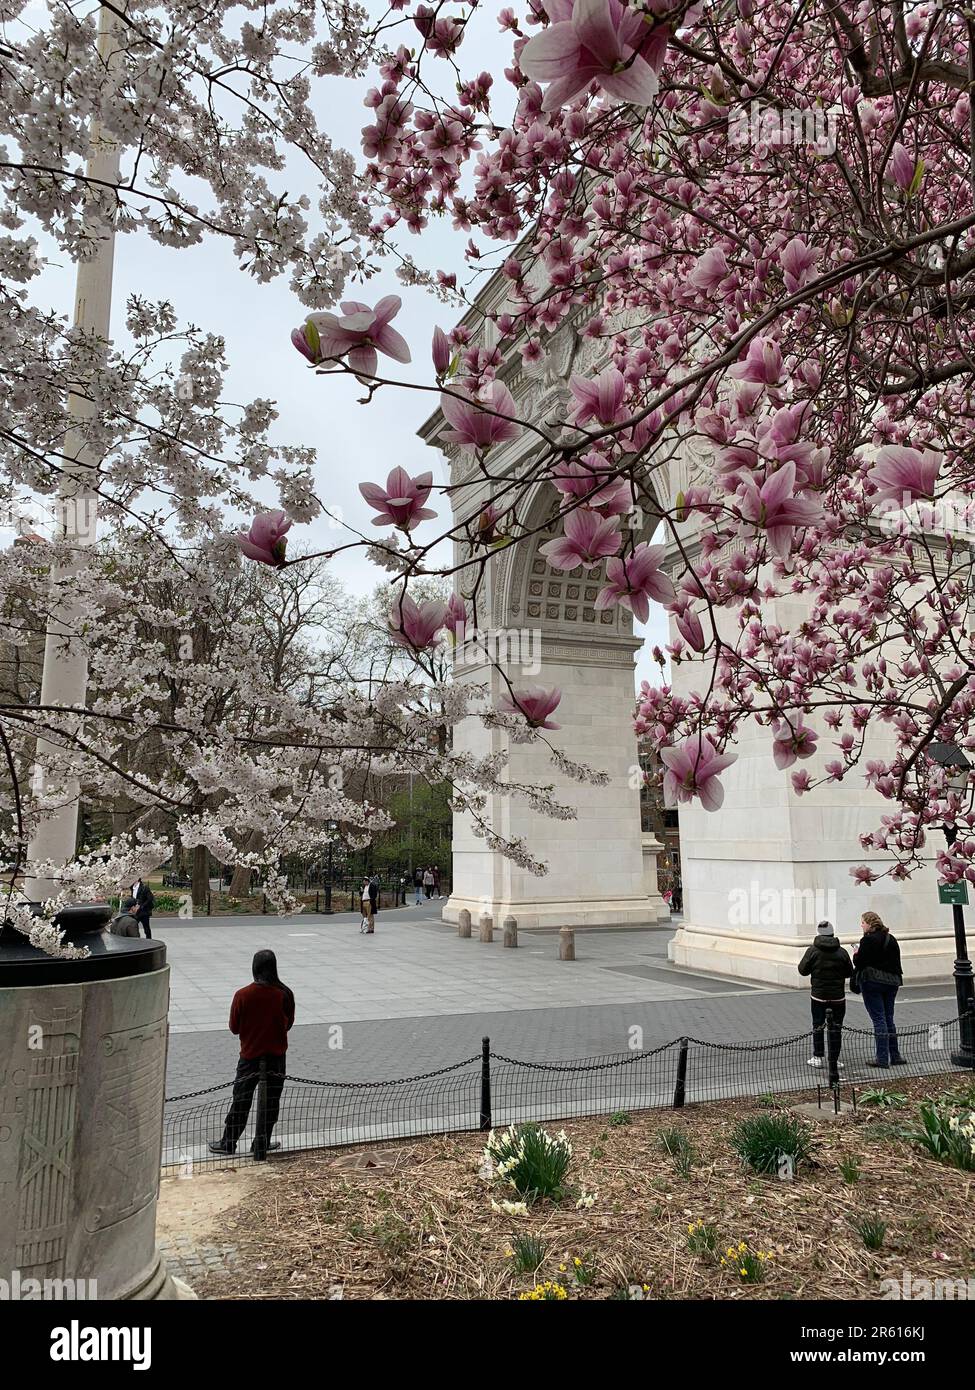 Les gens apprécient une journée de printemps sous la Washington Square Arch dans le Greenwich Village de New York, entouré de cerisiers en fleurs Banque D'Images